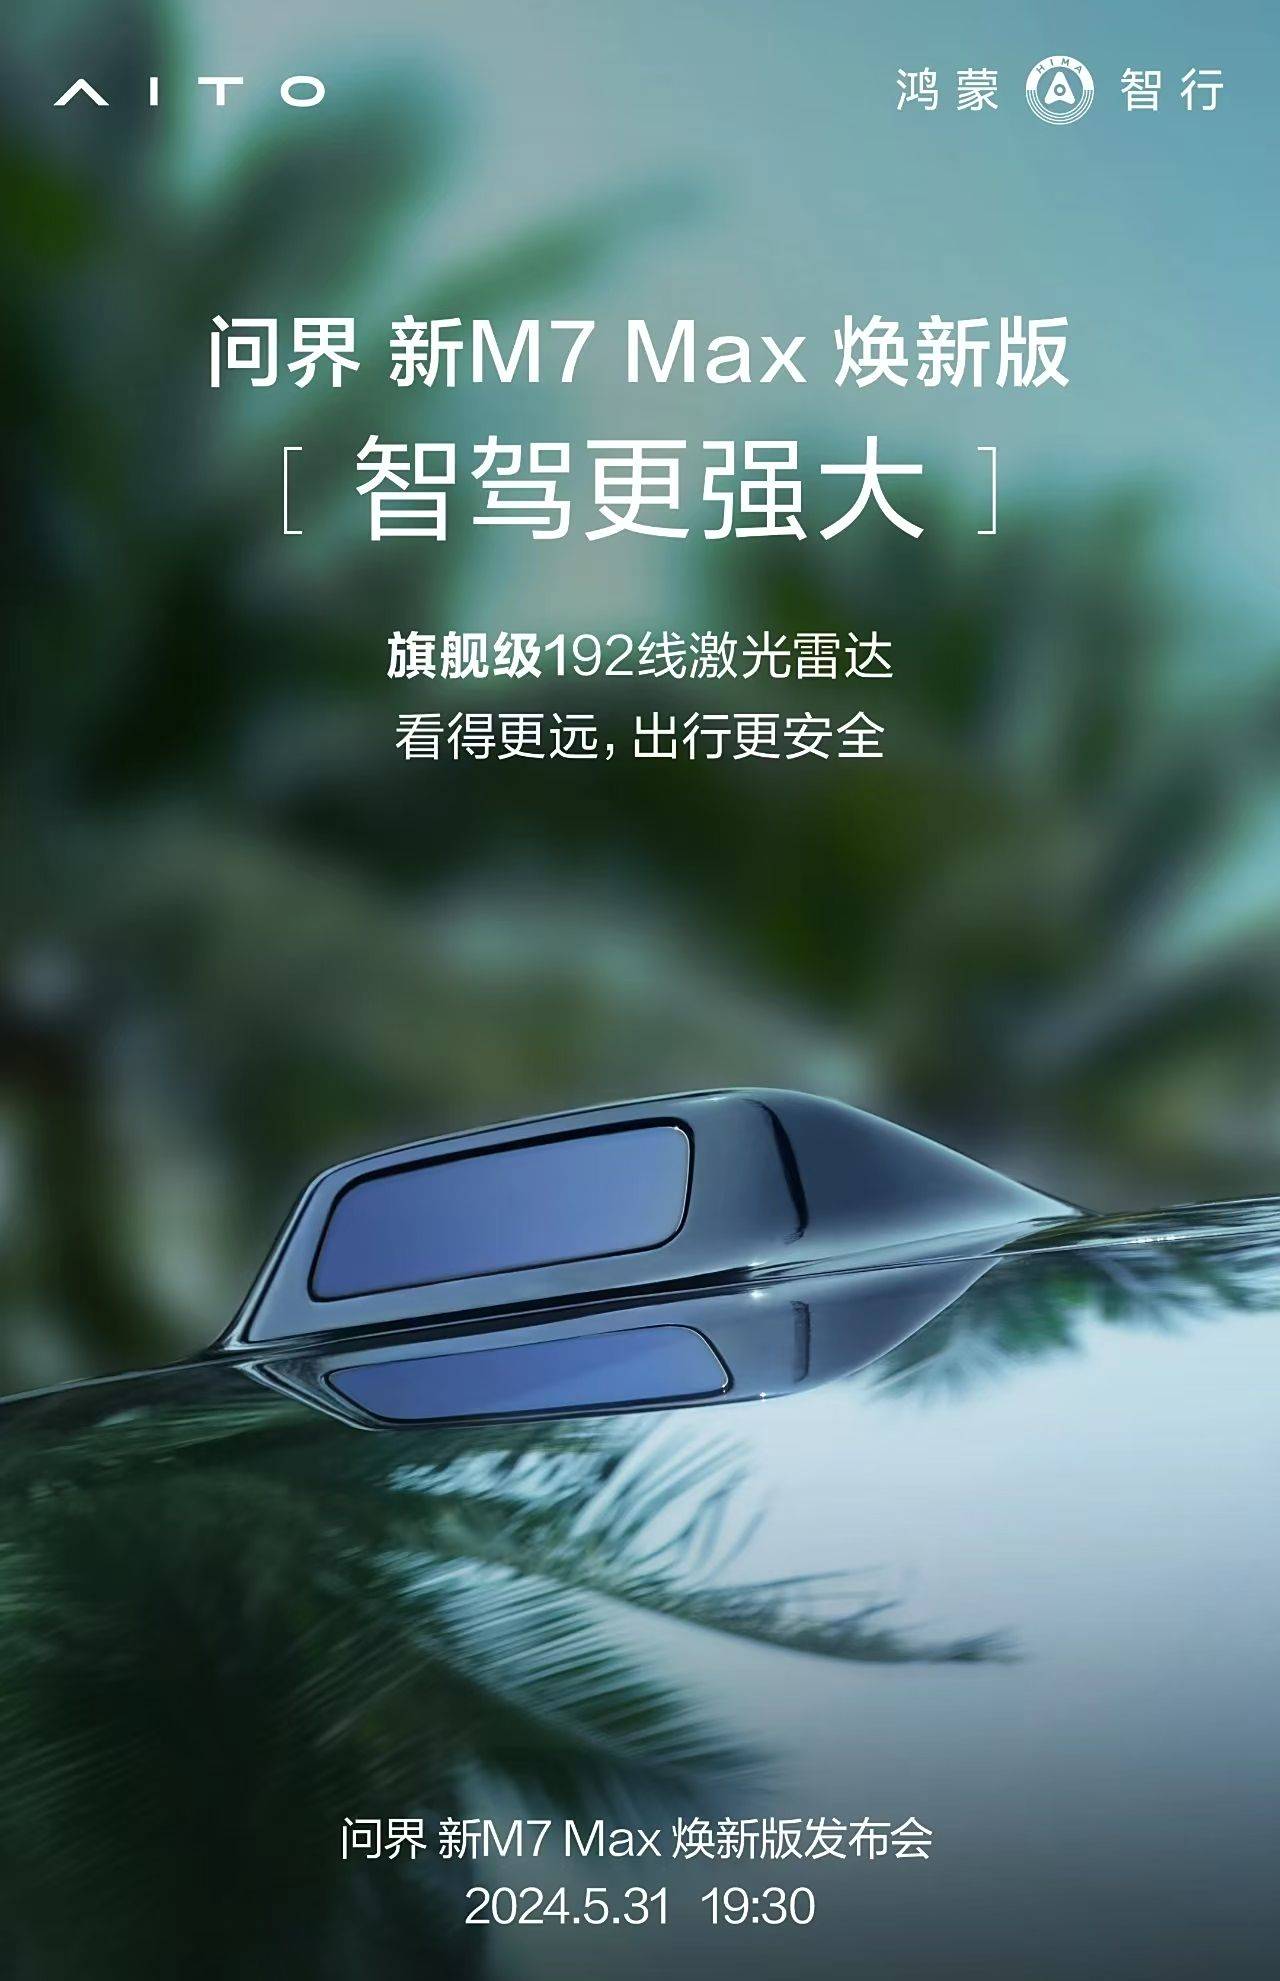 5月31日，新款M7 Max Huan将配备192线激光雷达_搜狐汽车_ Sohu.com。